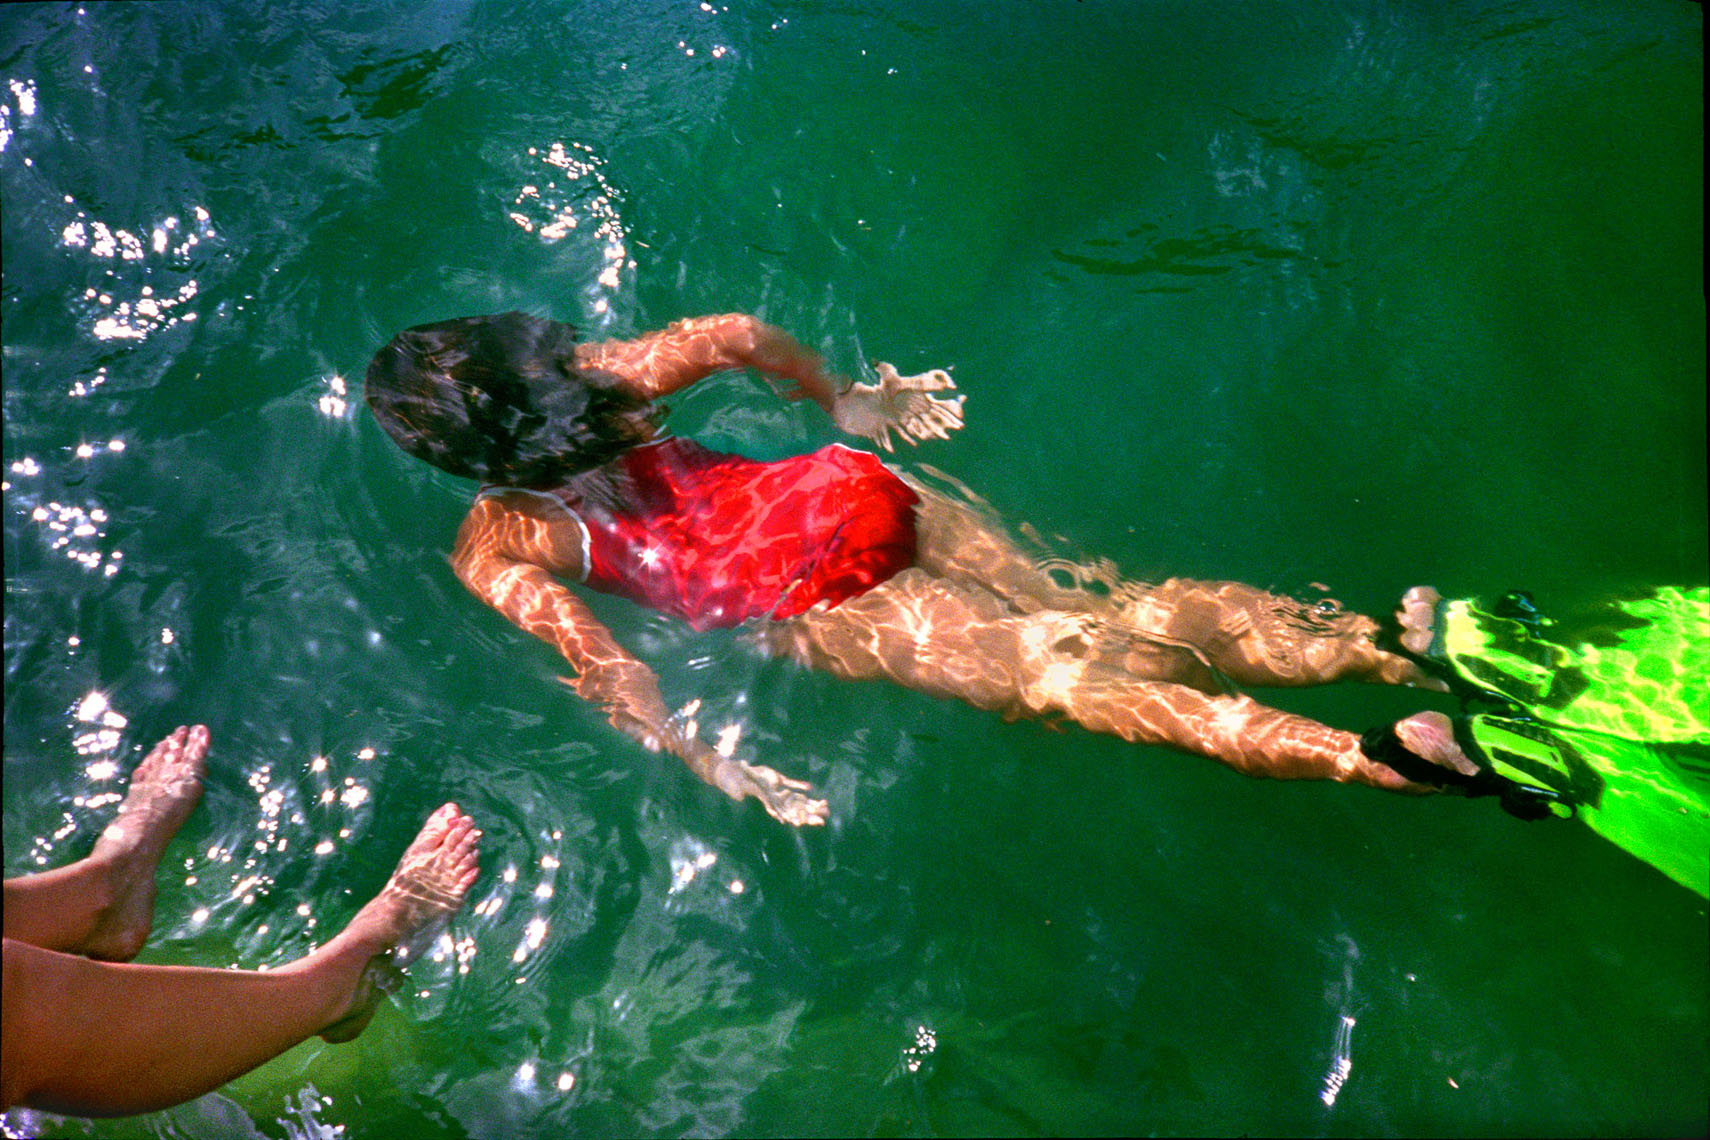 1160Barton Springs, Spring fed pool, girl underwater red bathing suit, green fins